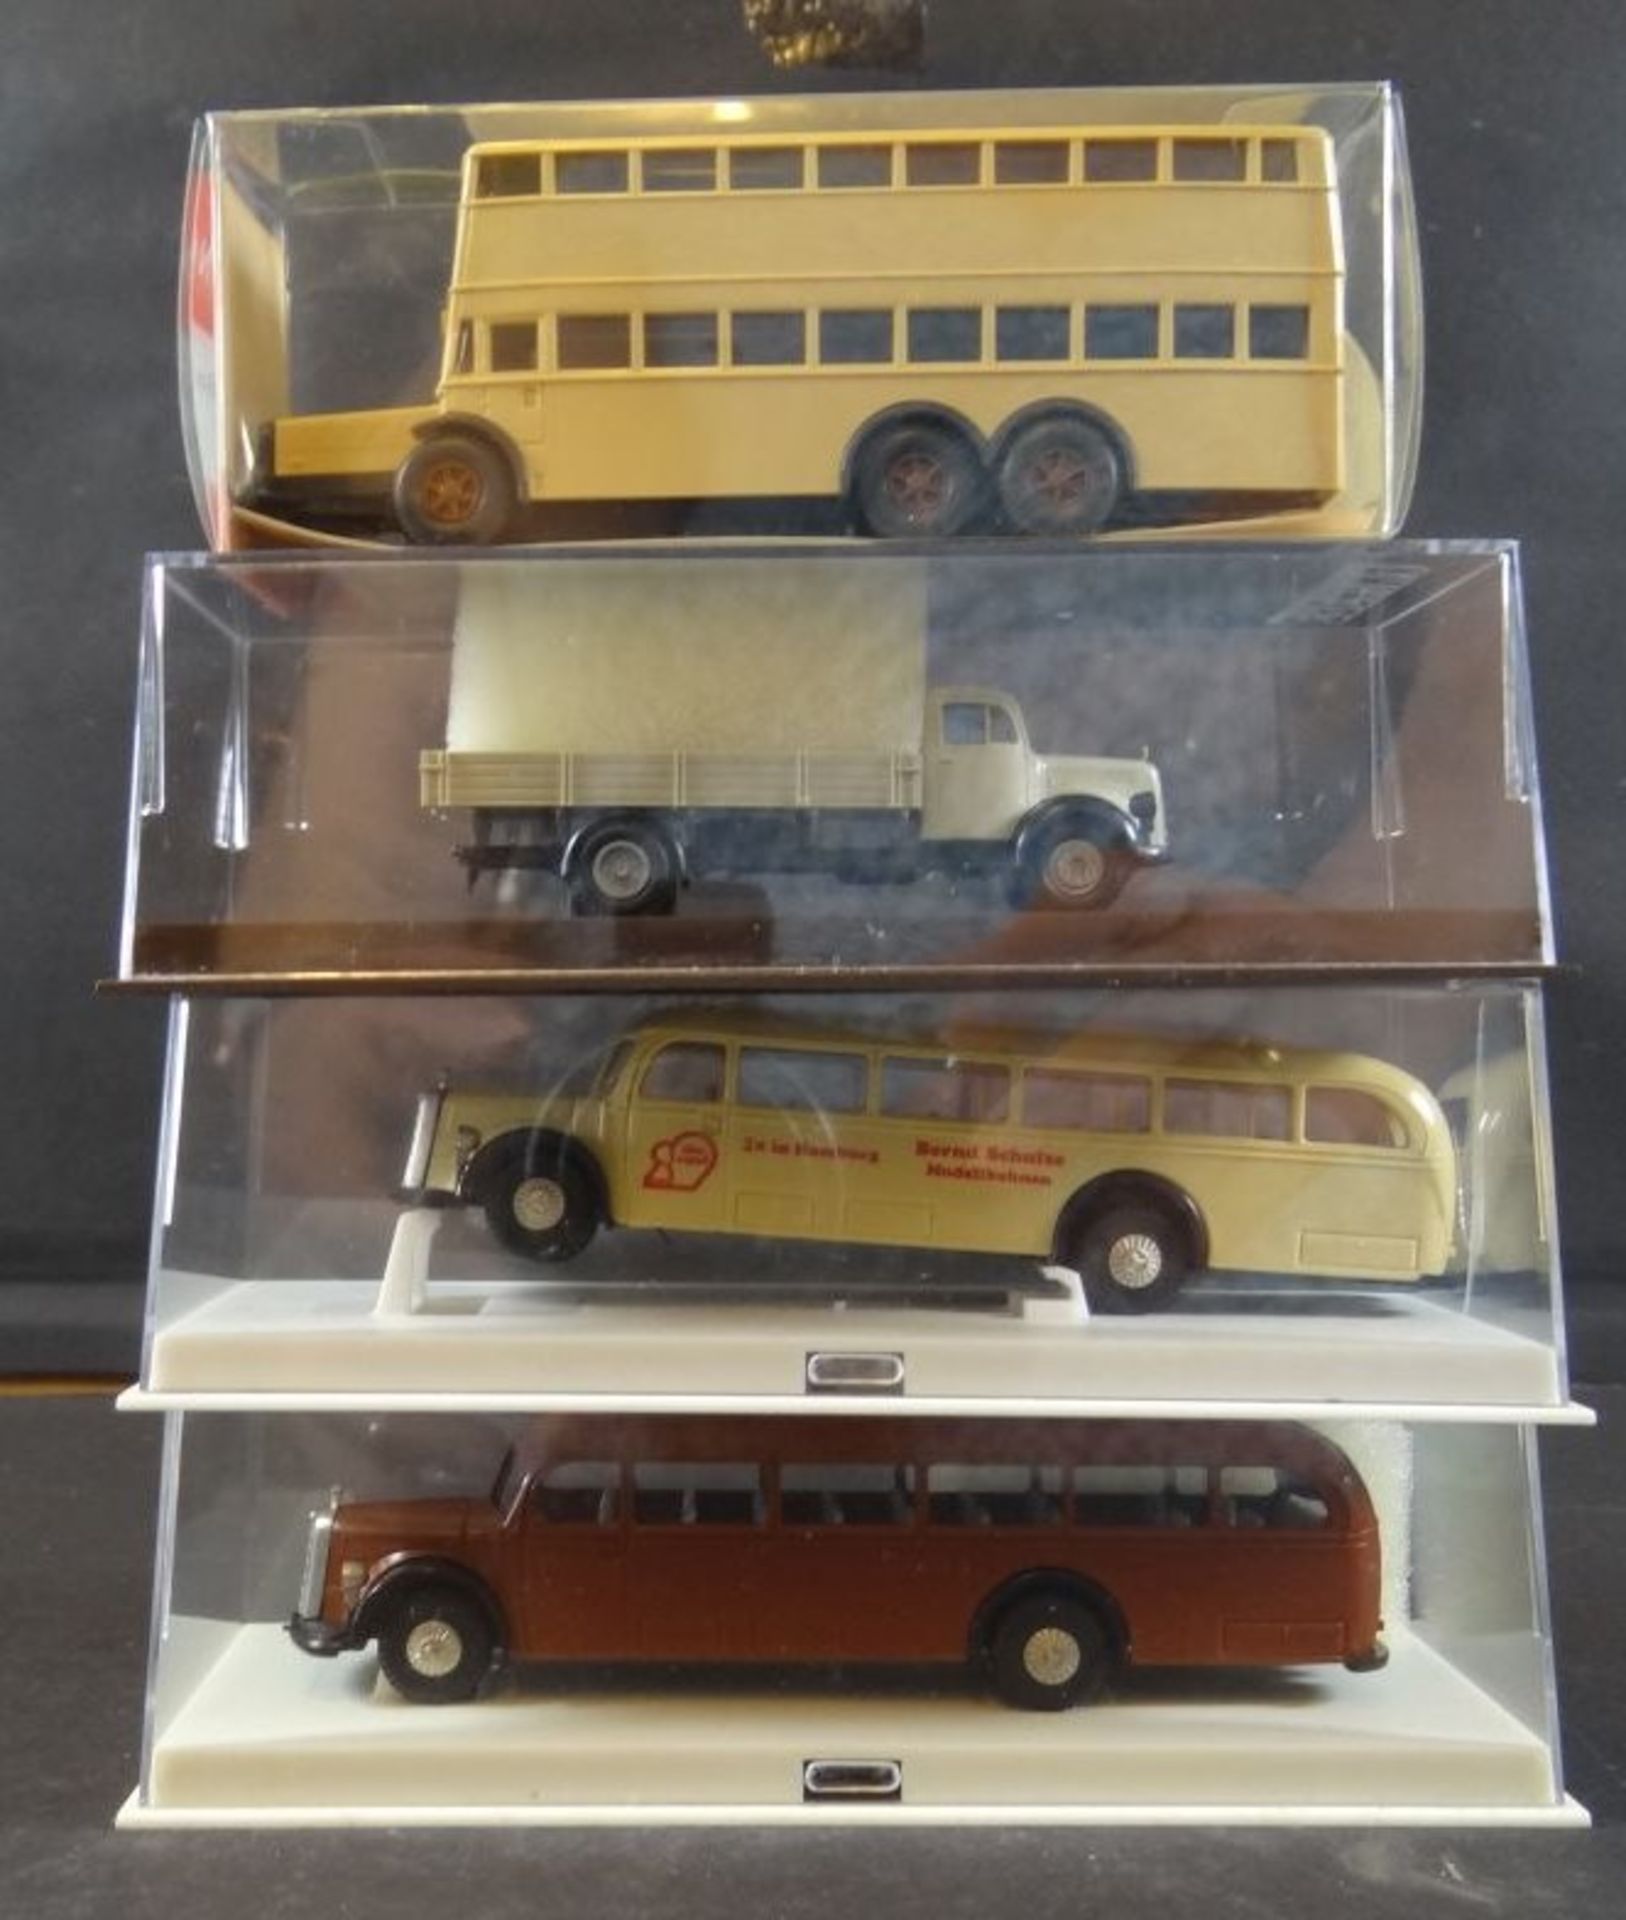 Karton mit 9 Modellautos bzw. Bussen, LKW, hpts. Wiking, tw. boxed - Bild 3 aus 8